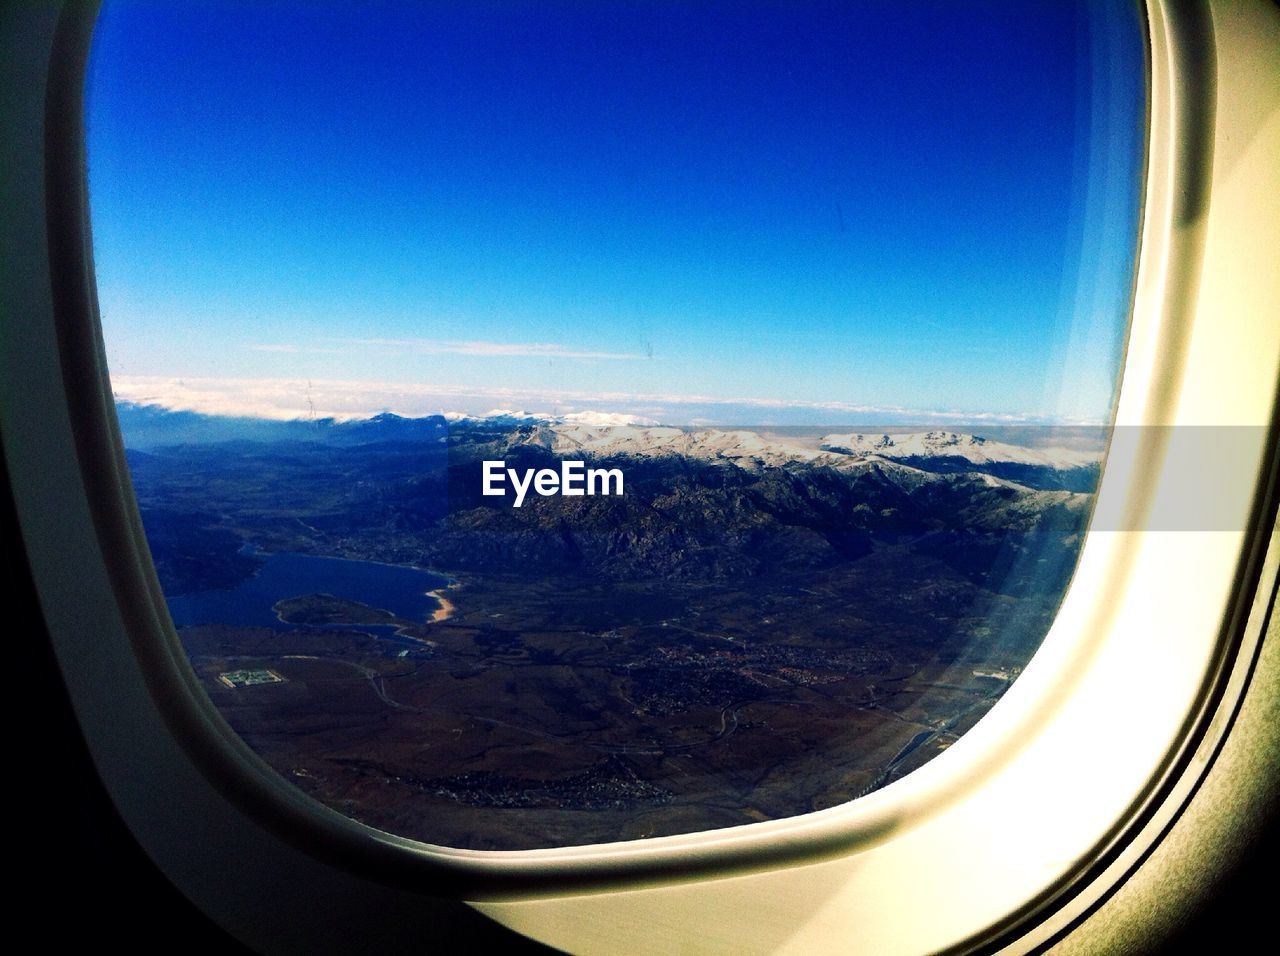 Rocky landscape seen from airplane window